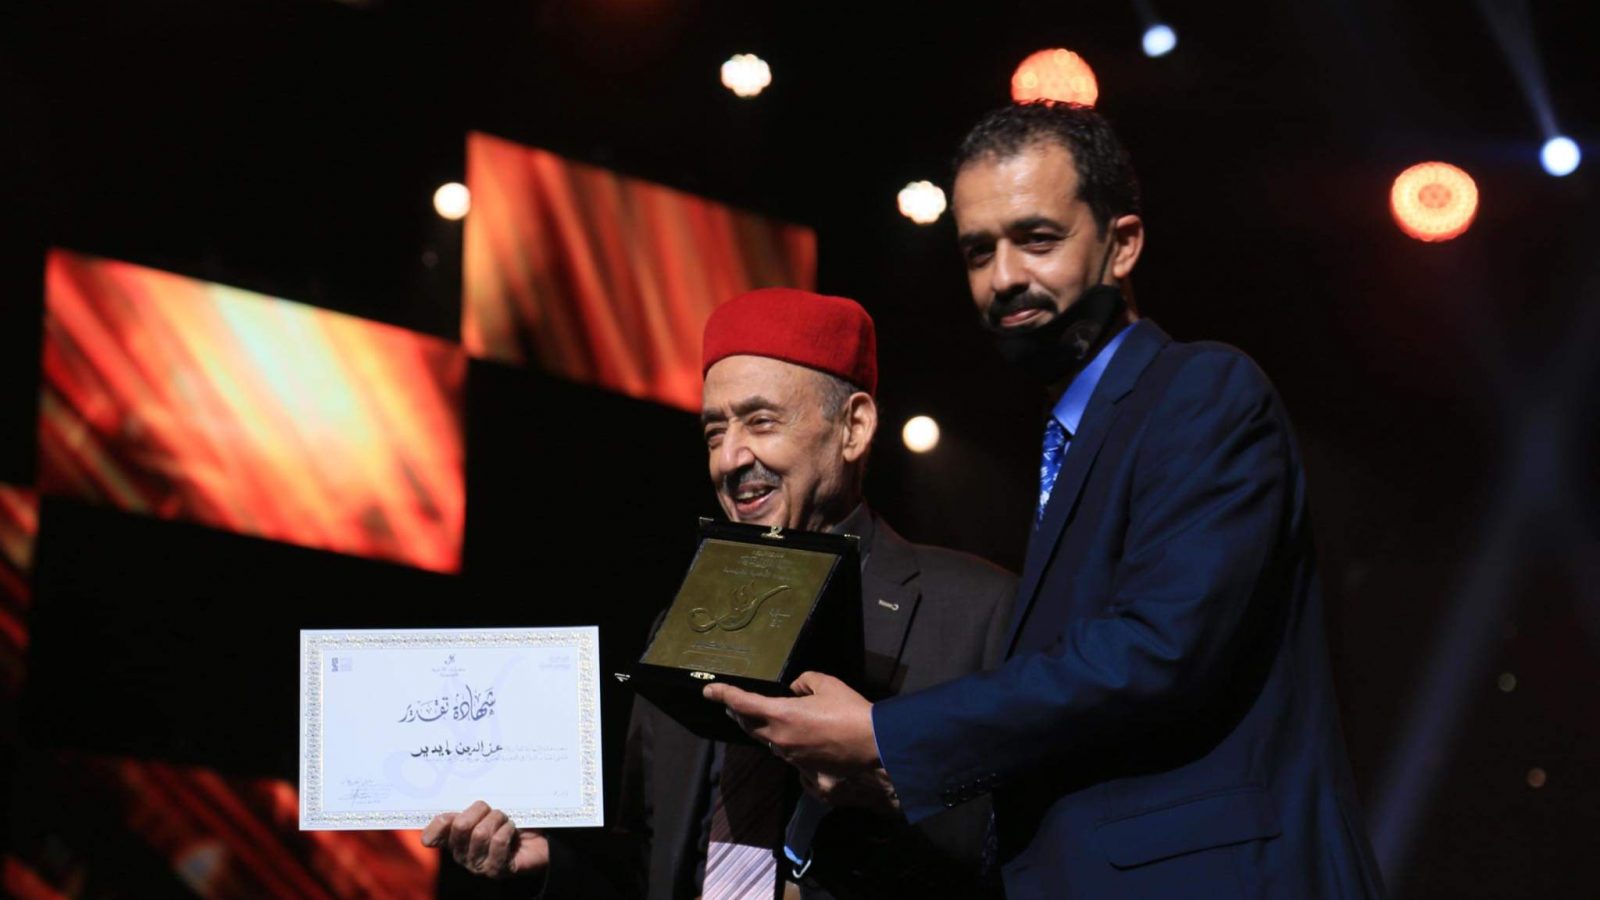 سهرة إختتام وتوزيع جوائز الدورة العشرين من مهرجان الأغنية التونسية